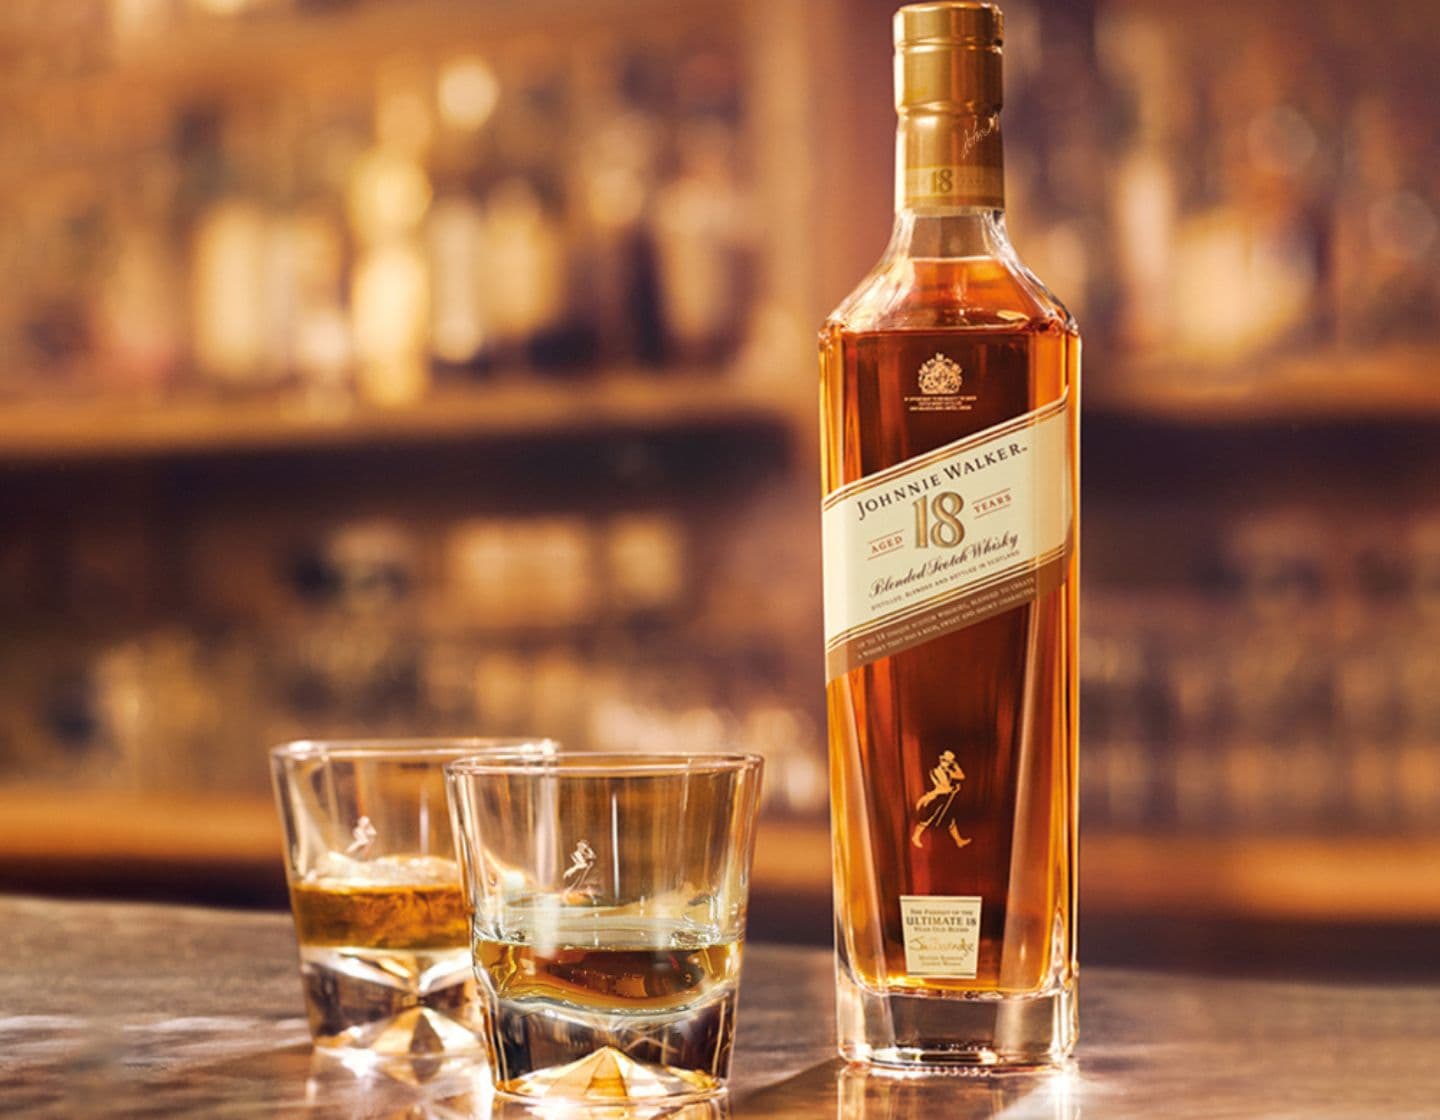 Johnnie Walker Aged 18 Years whisky bottle beside 2 whisky glasses